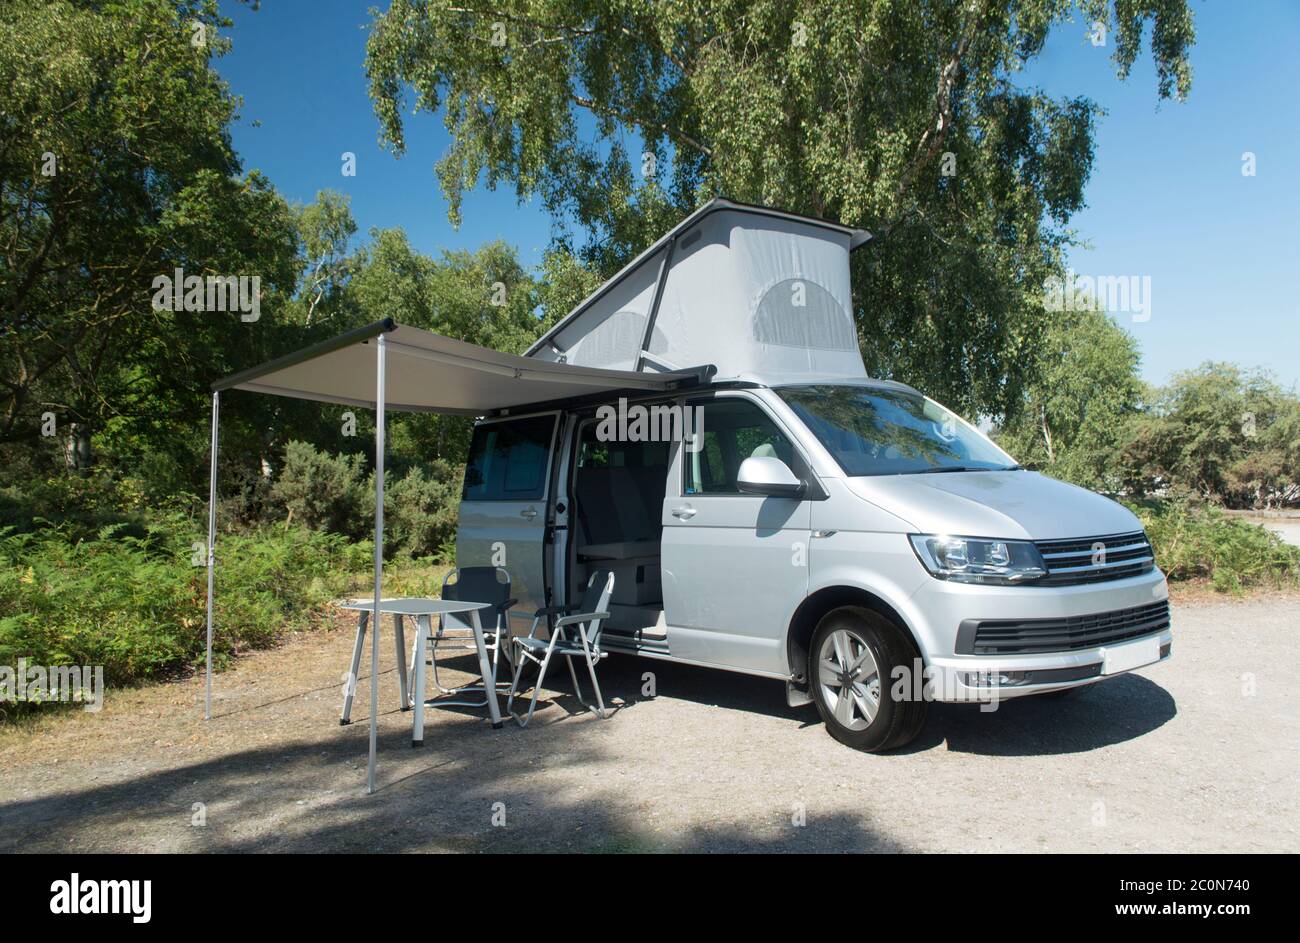 VW Camper Van Vacation, destination de vacances, voyager dans une fourgonnette de camping pour les vacances, destination de vacances pour l'été dans une maison mobile Banque D'Images